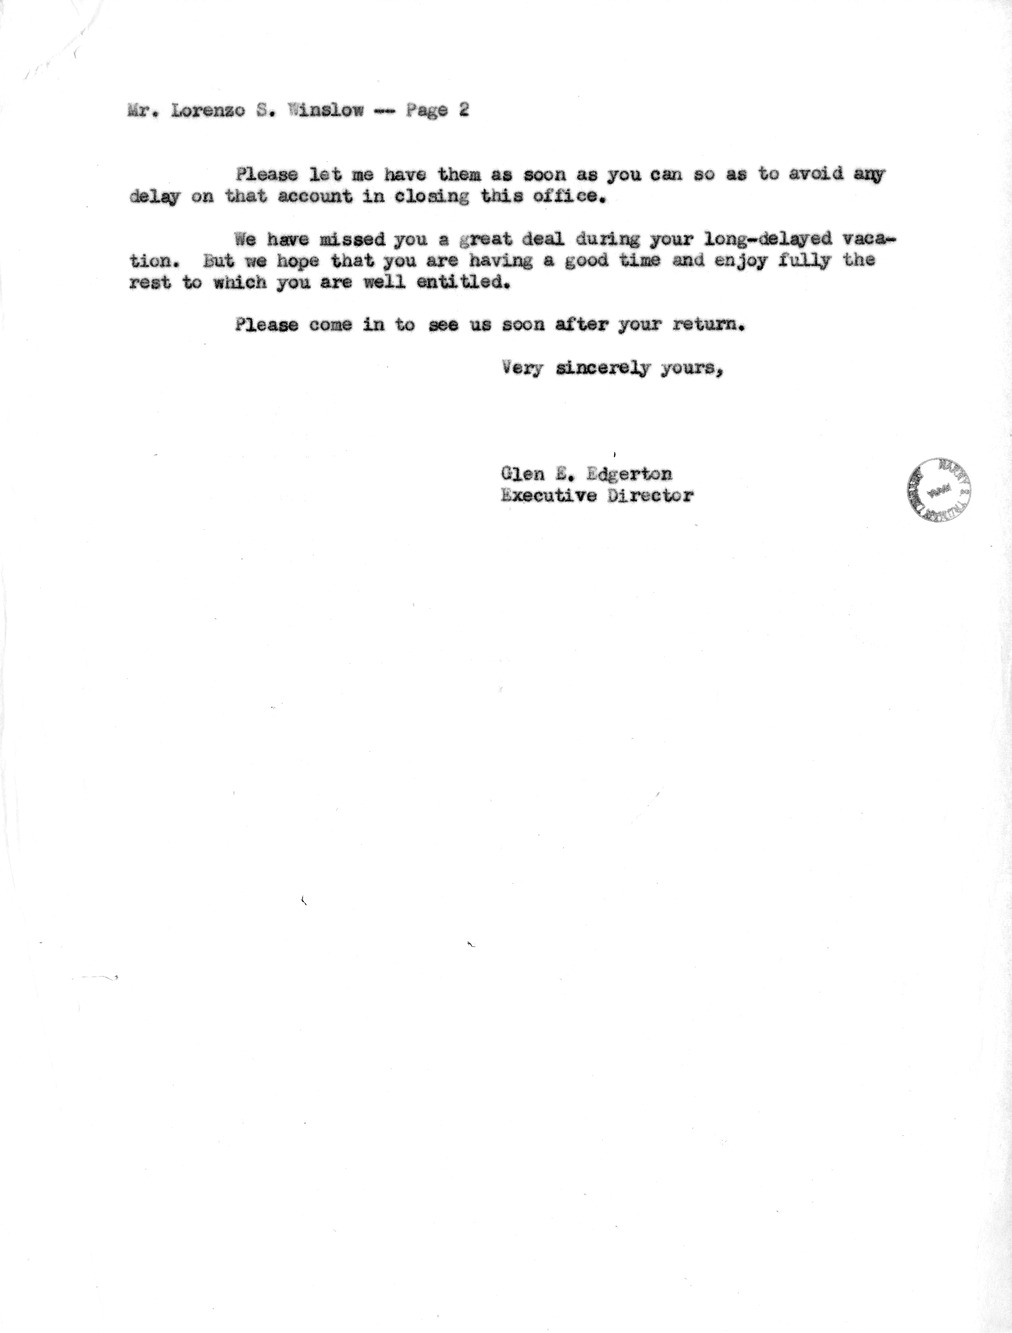 Letter from Major General Glen E. Edgerton to Lorenzo Winslow